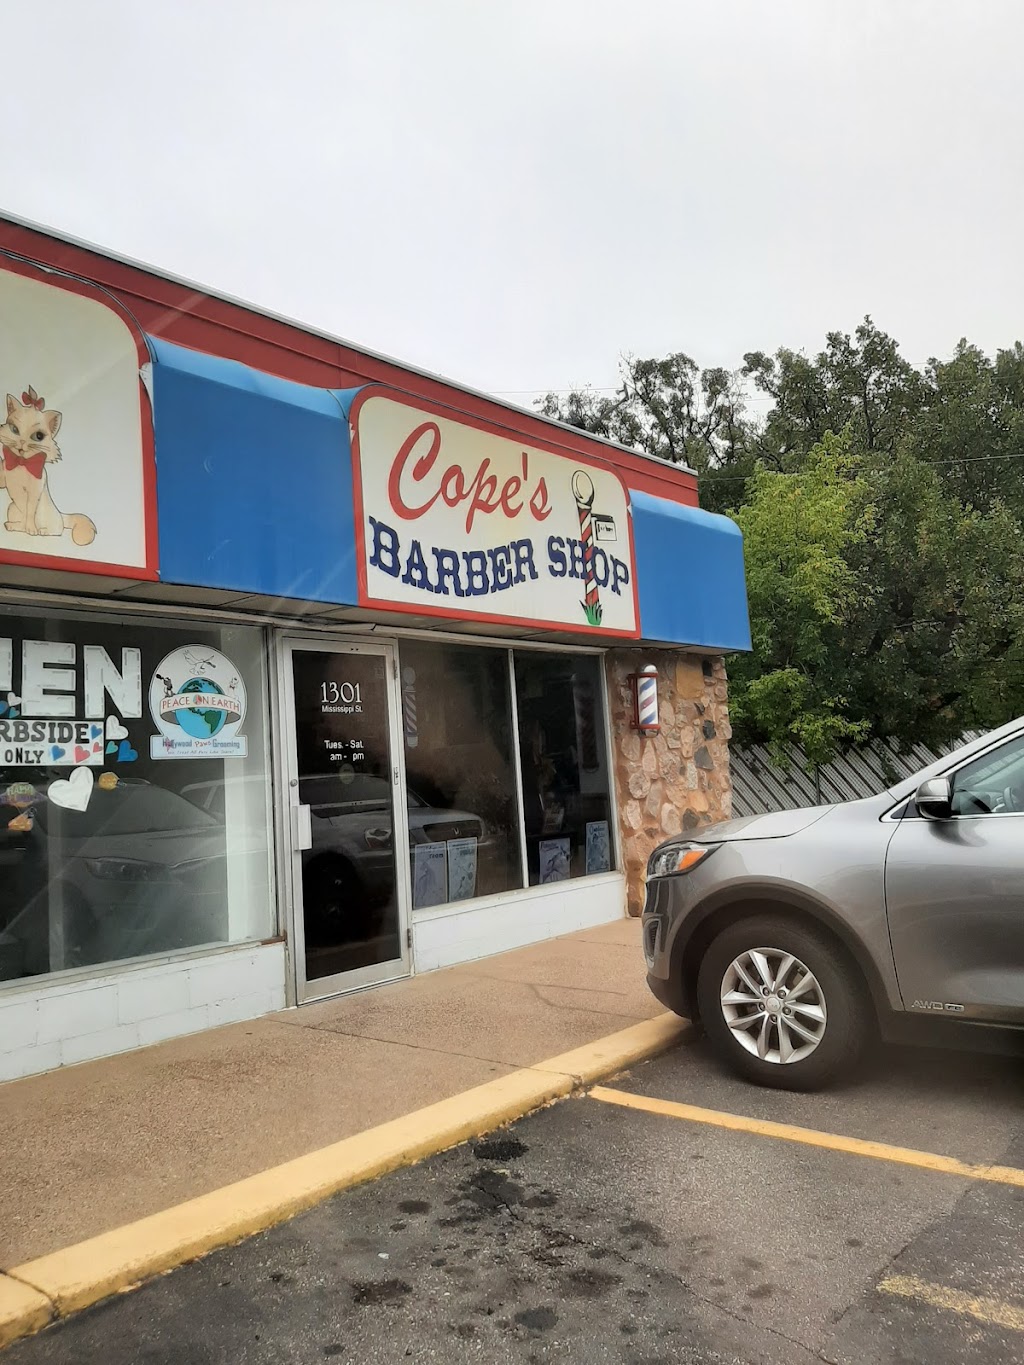 Copes Barber Shop | 1301 Mississippi St NE, Fridley, MN 55432 | Phone: (763) 498-4443